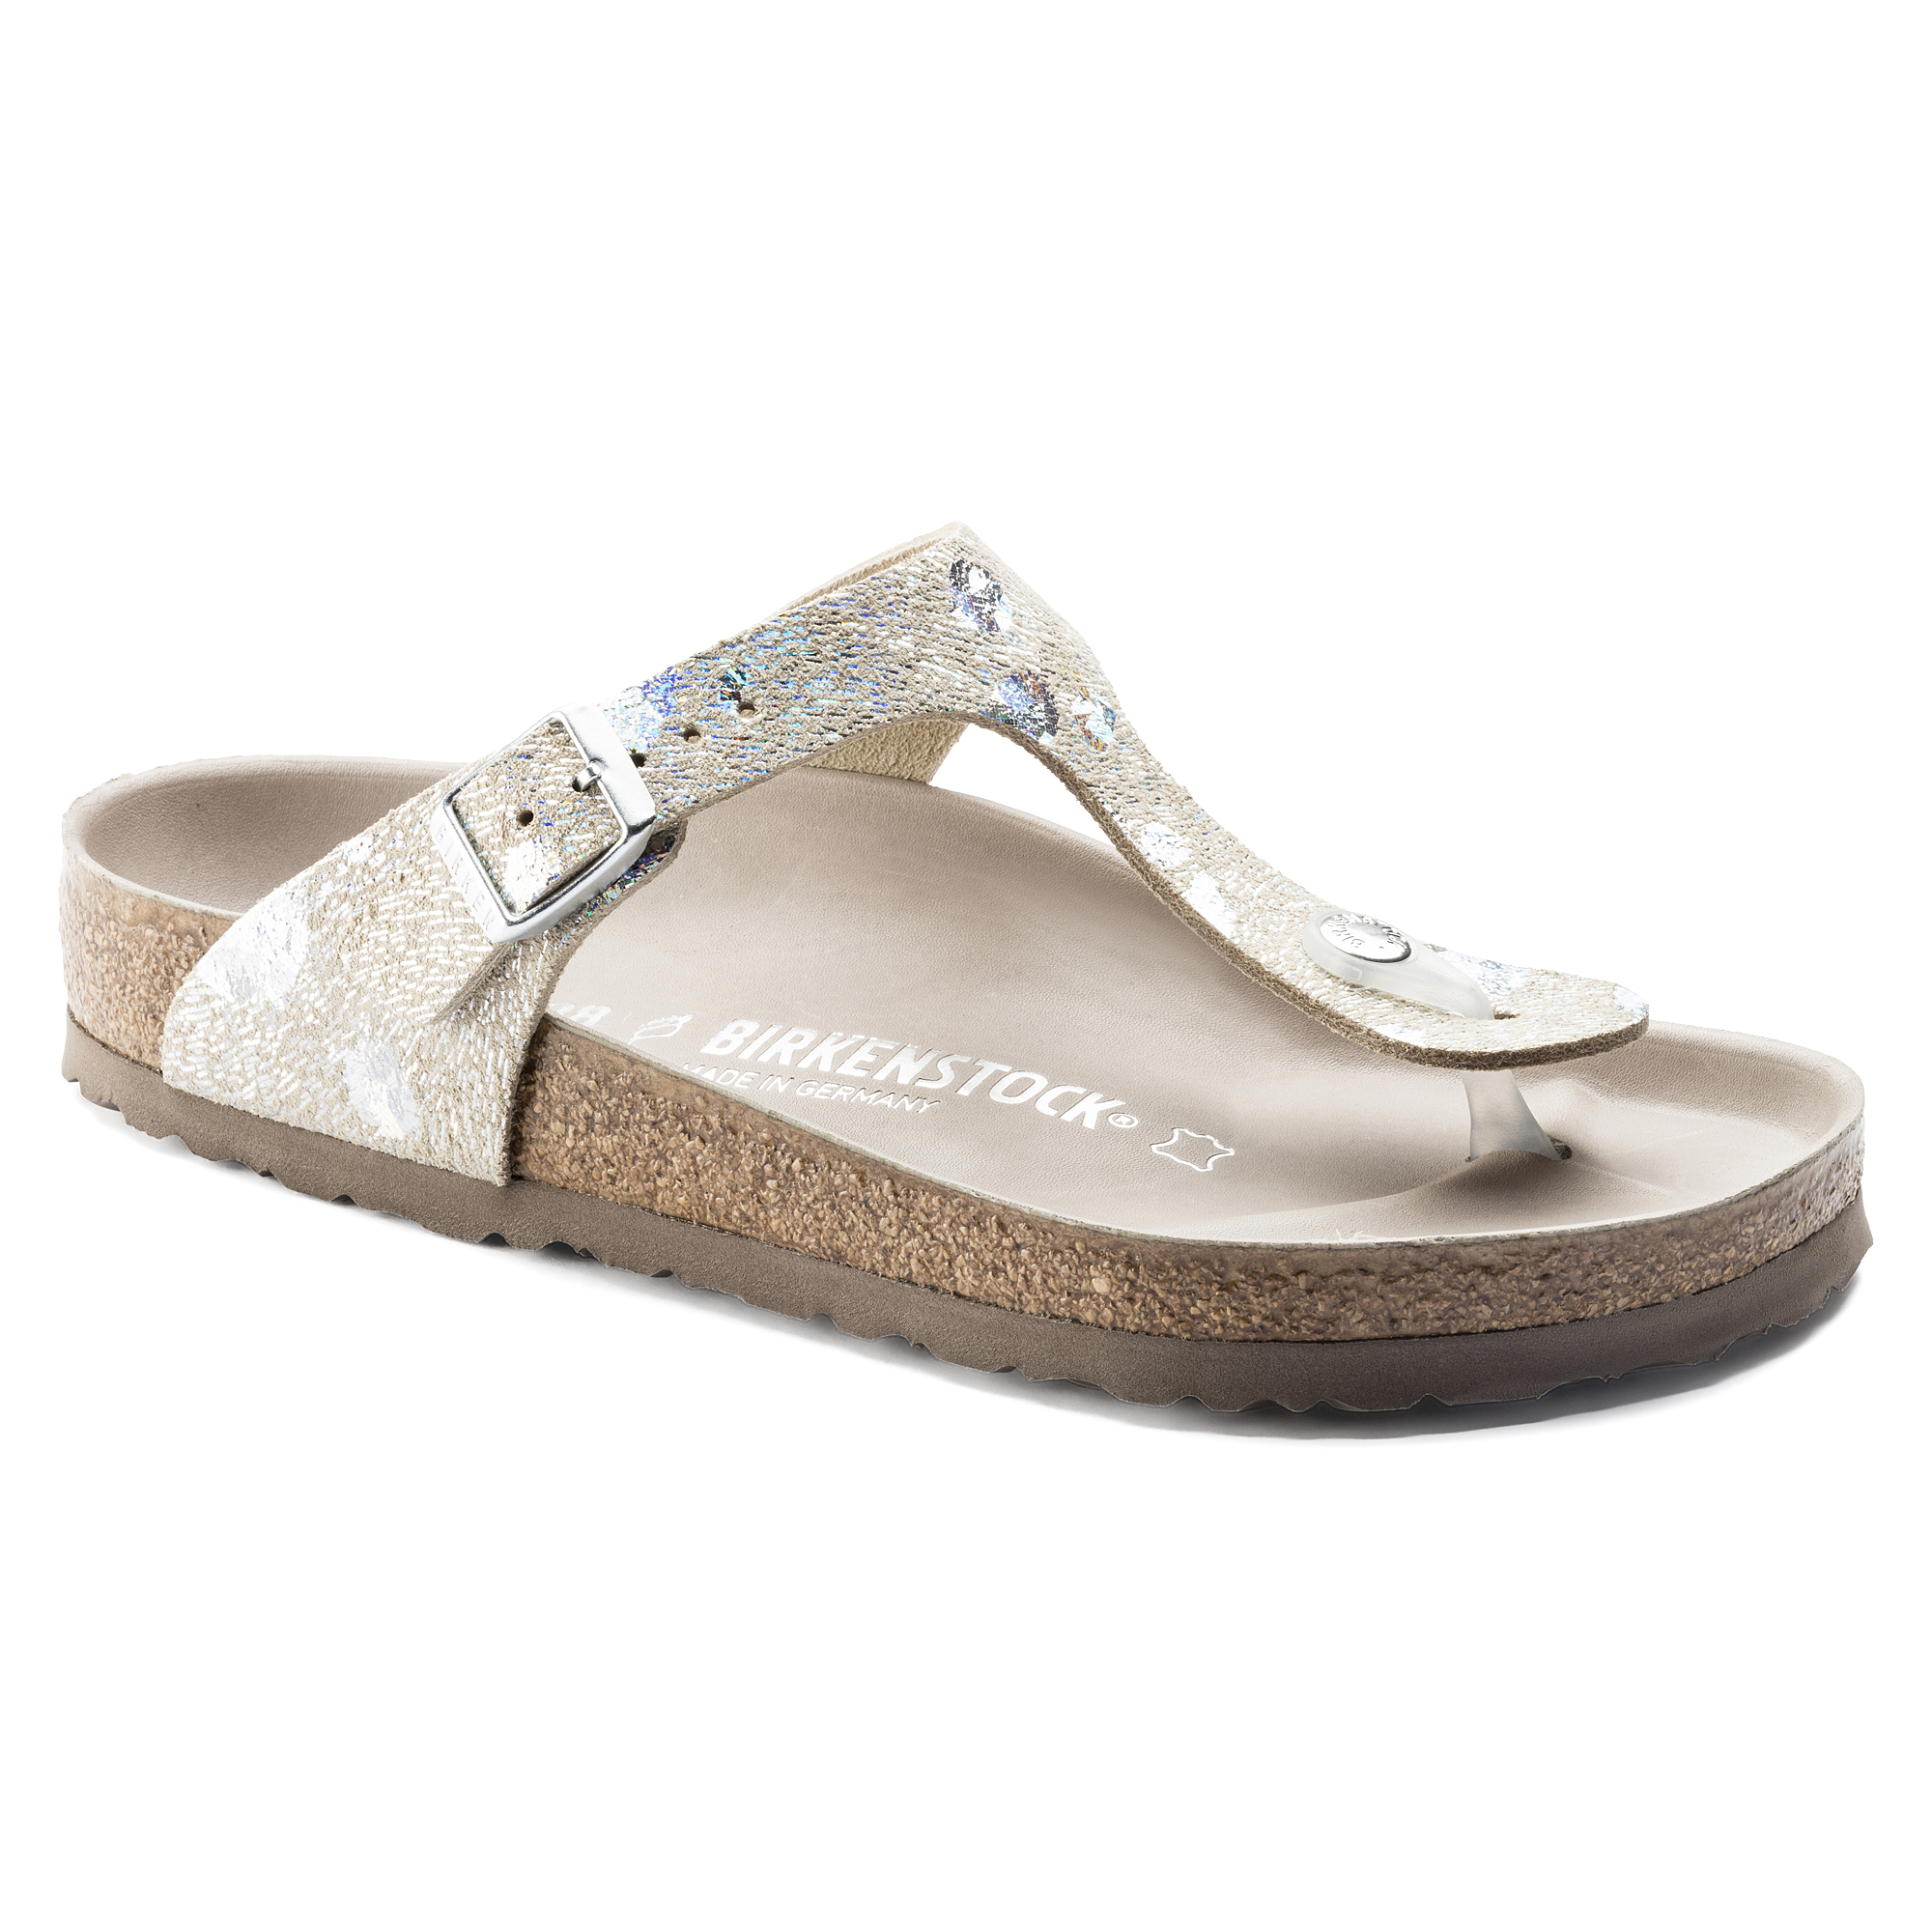 metallic silver birkenstock sandals